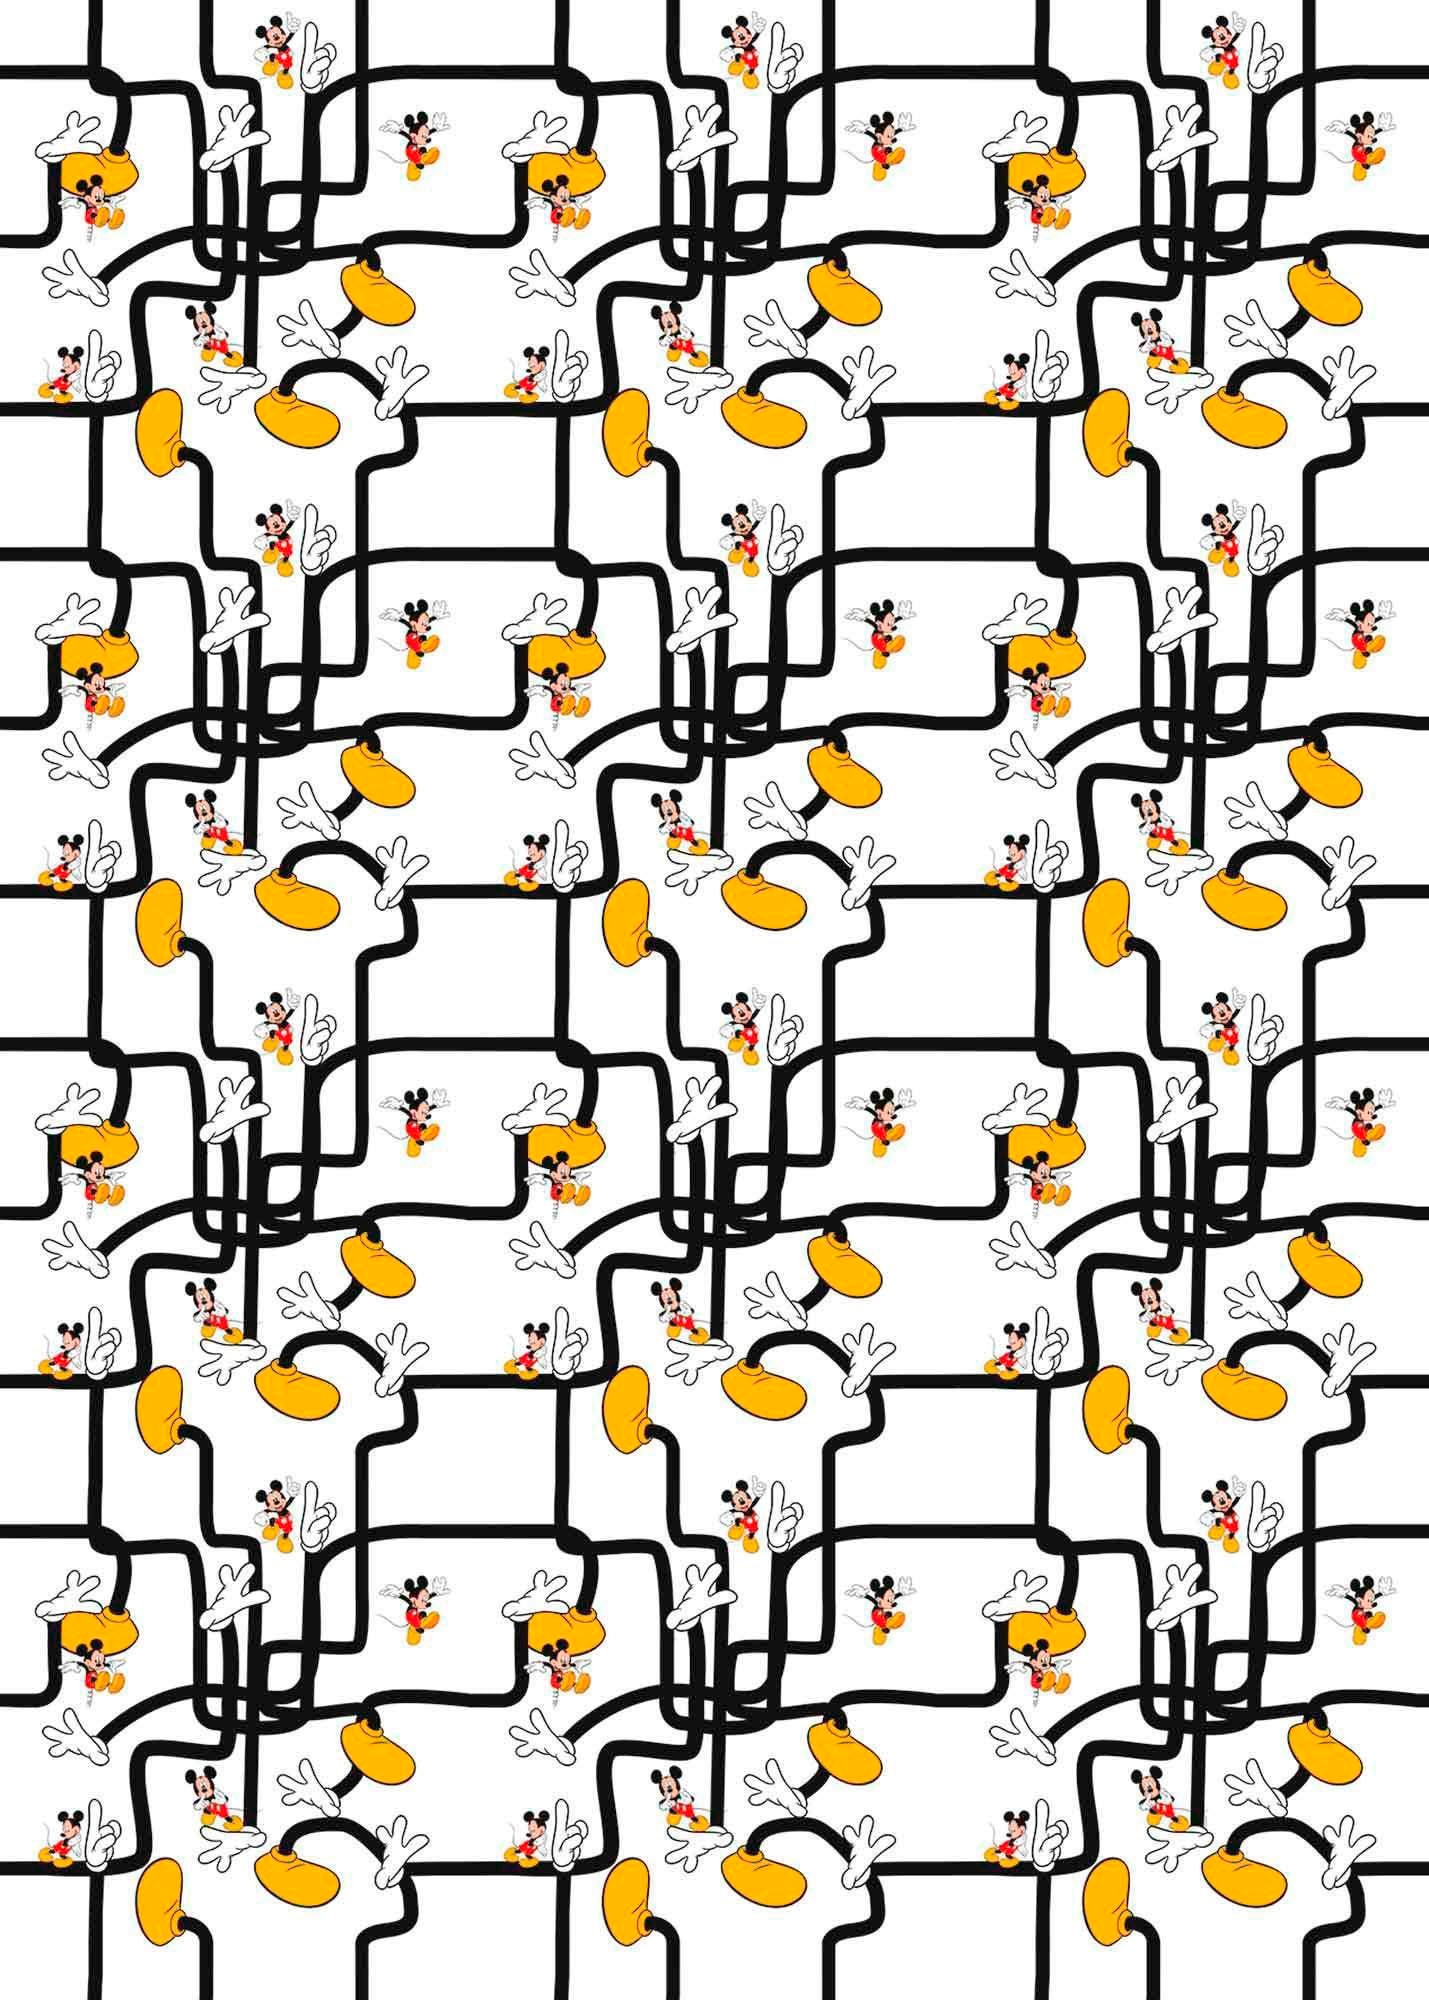 Vliestapete »Mickey Mouse Foot Labyrinth«, 200x280 cm (Breite x Höhe)